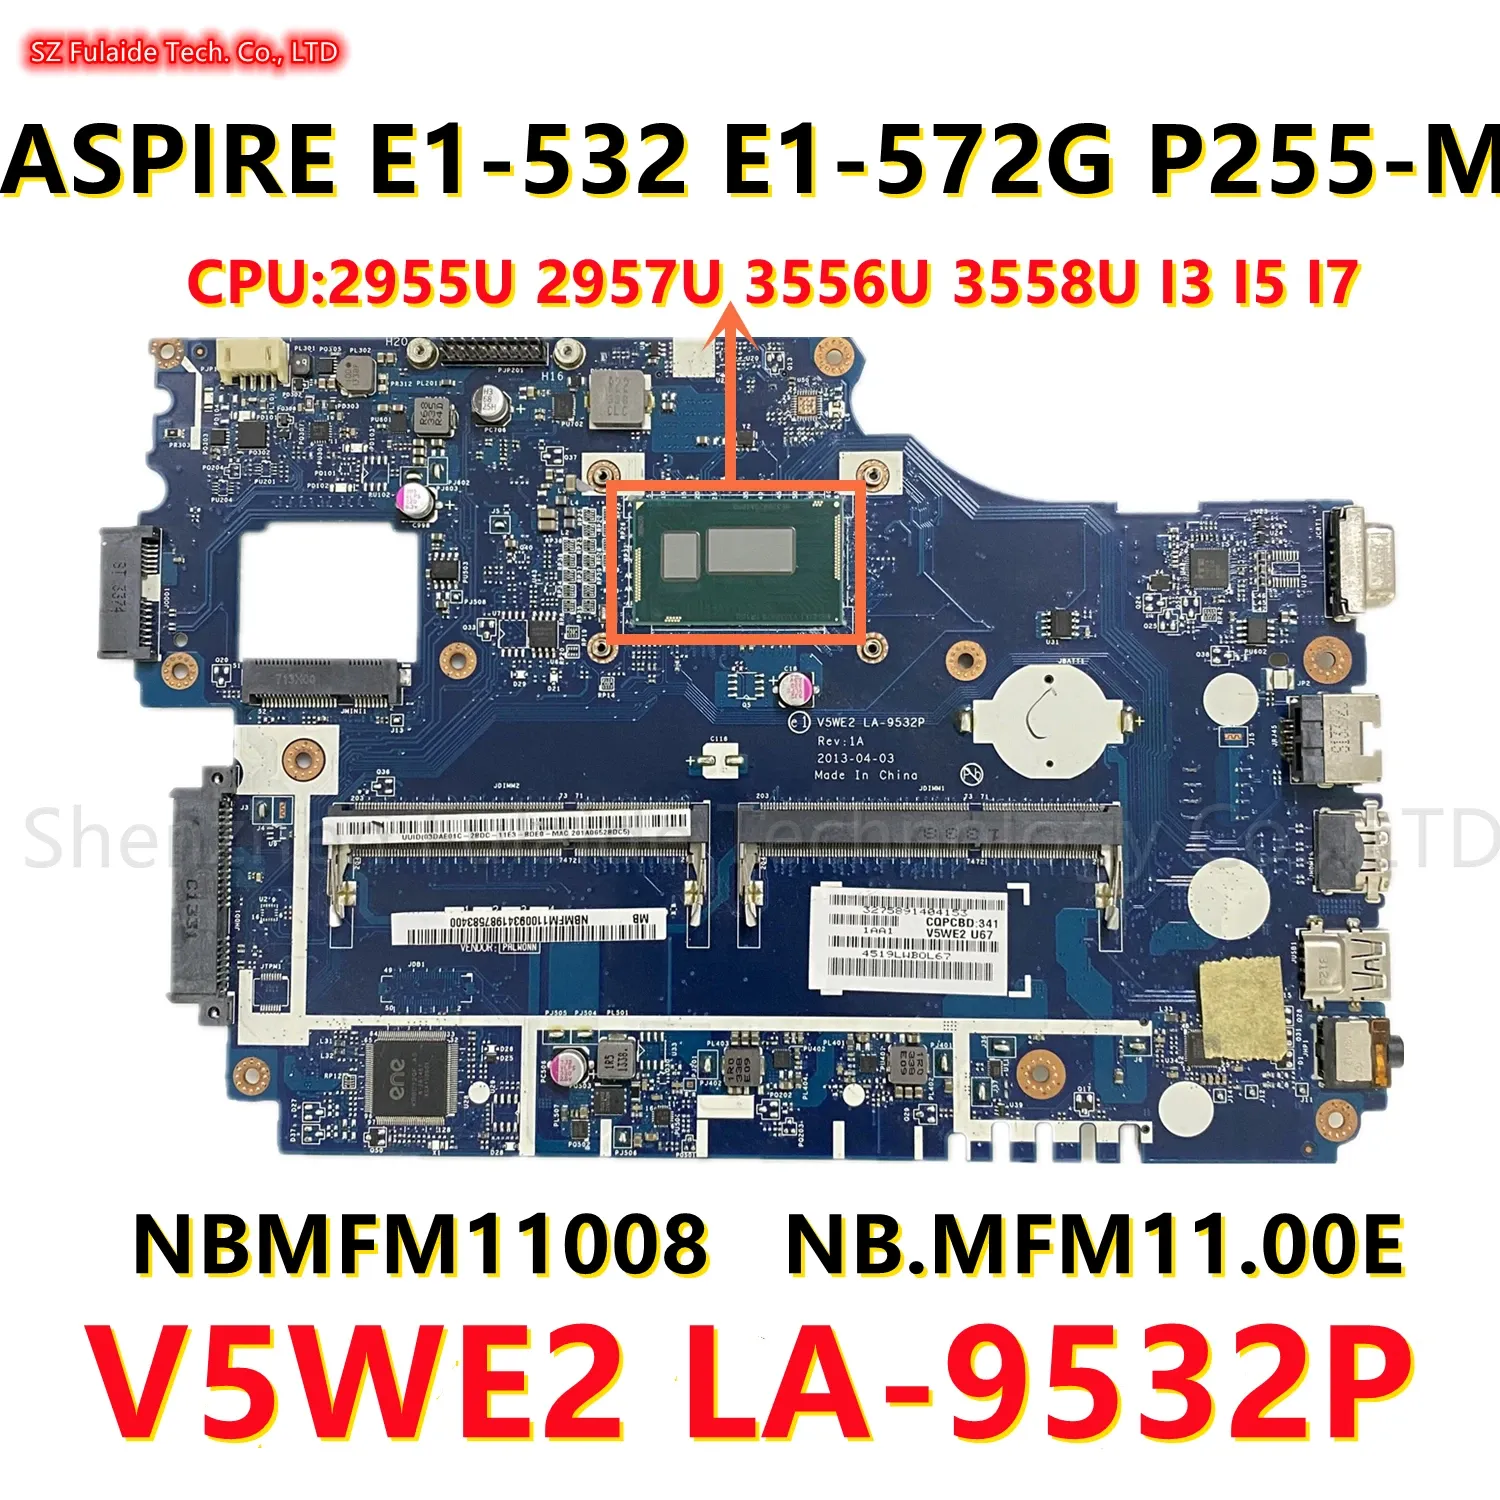 Scheda madre NBMFM11008 per Acer Aspire E1532 E1572G P255M Laptop Motherboard con 2955u 2957u 3556U 3558U I3 I5 I7 CPU V5WE2 LA9532P